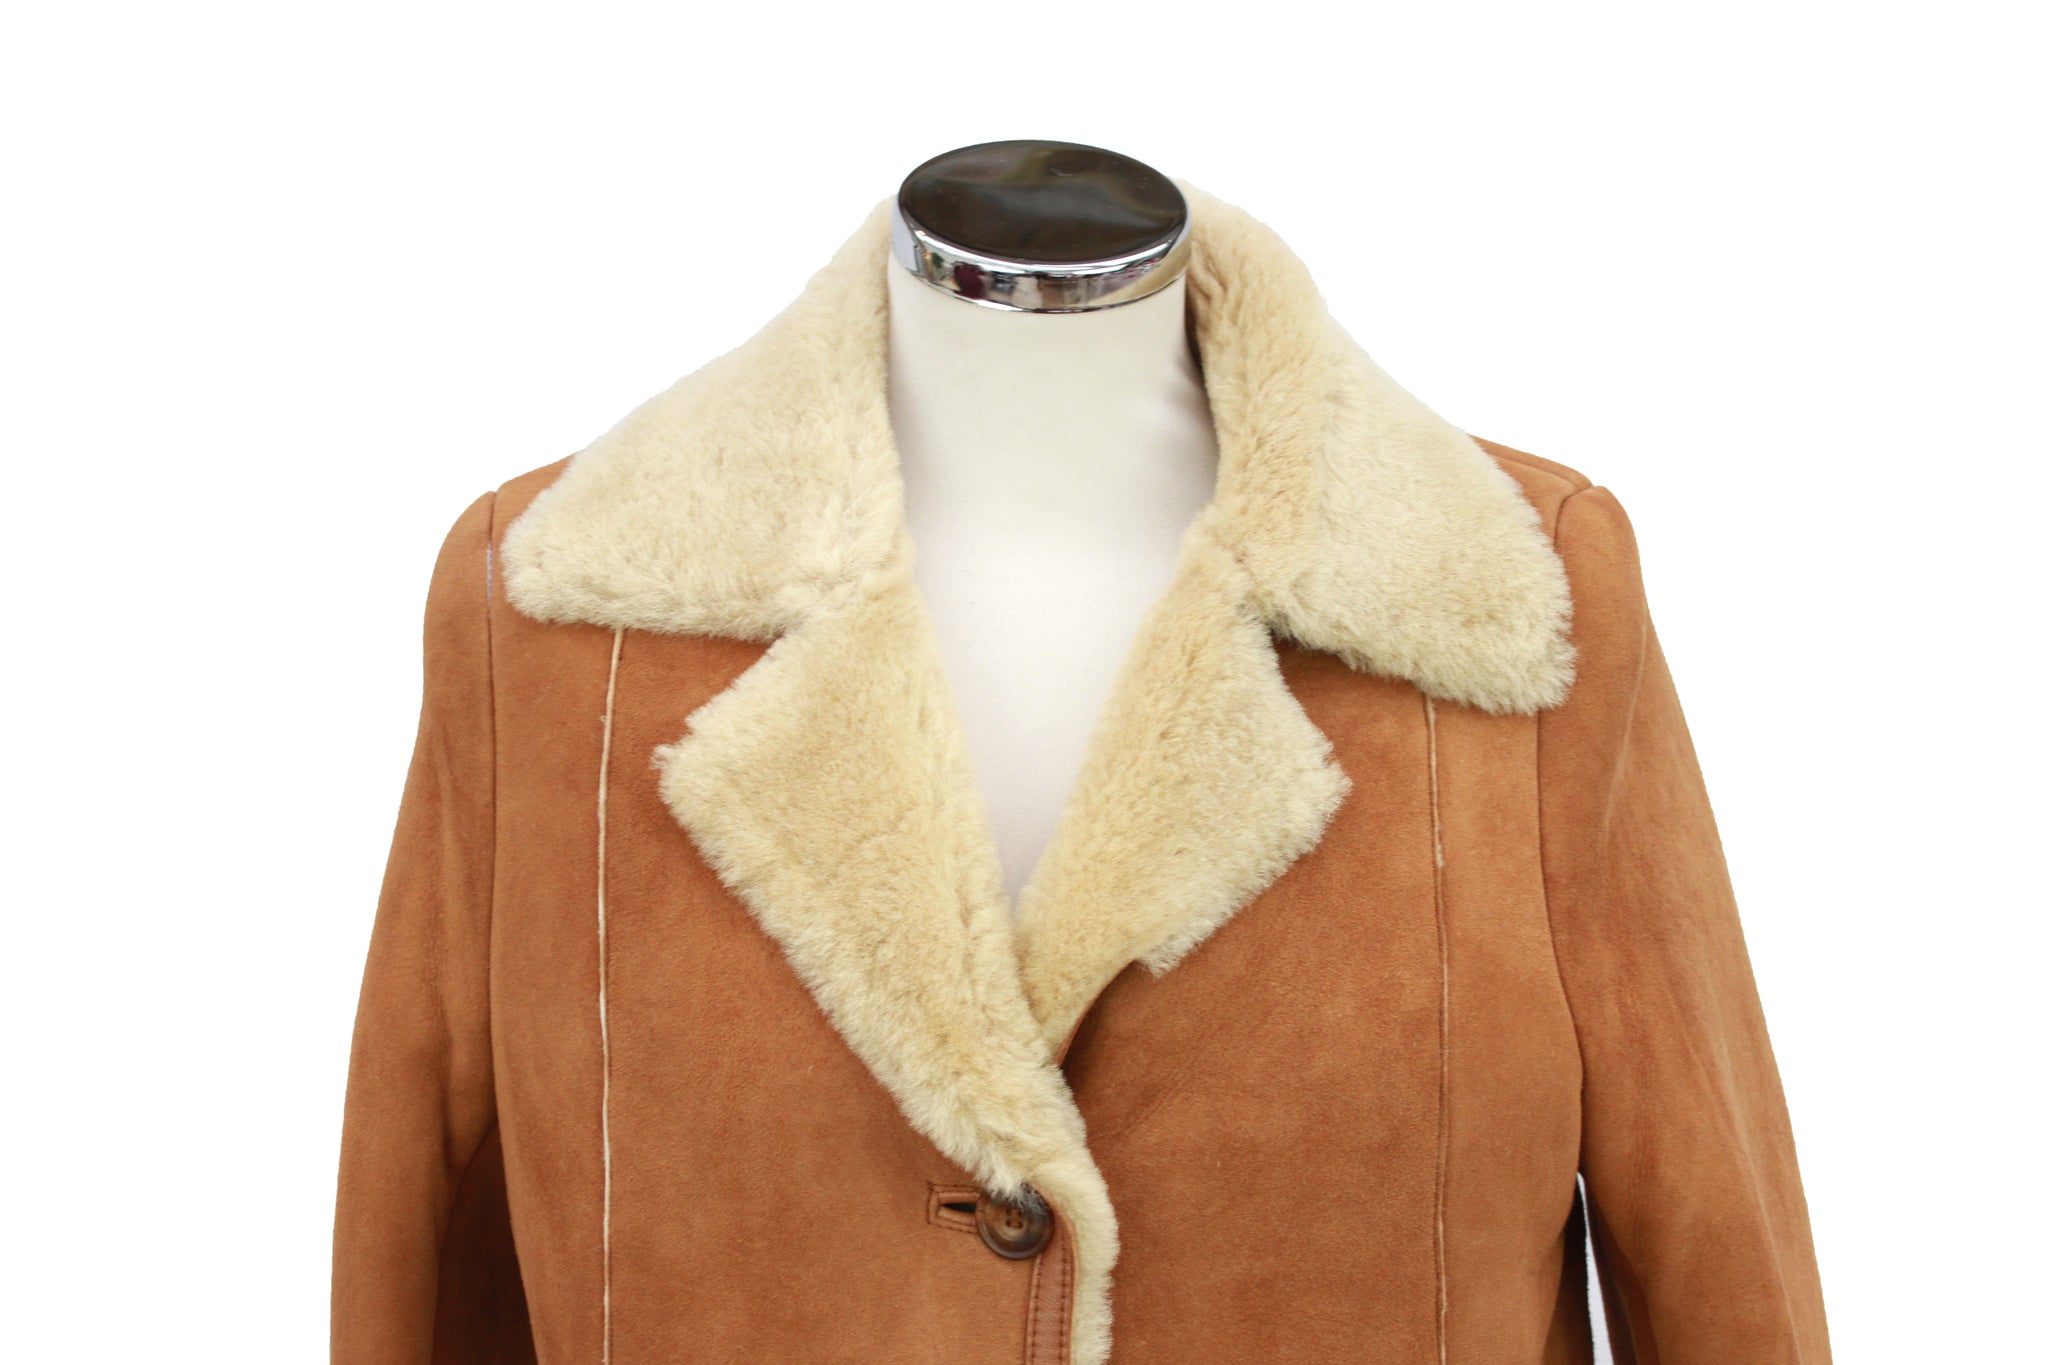 Women's Button Fastening Suede Leather Sheepskin Jacket in Tan